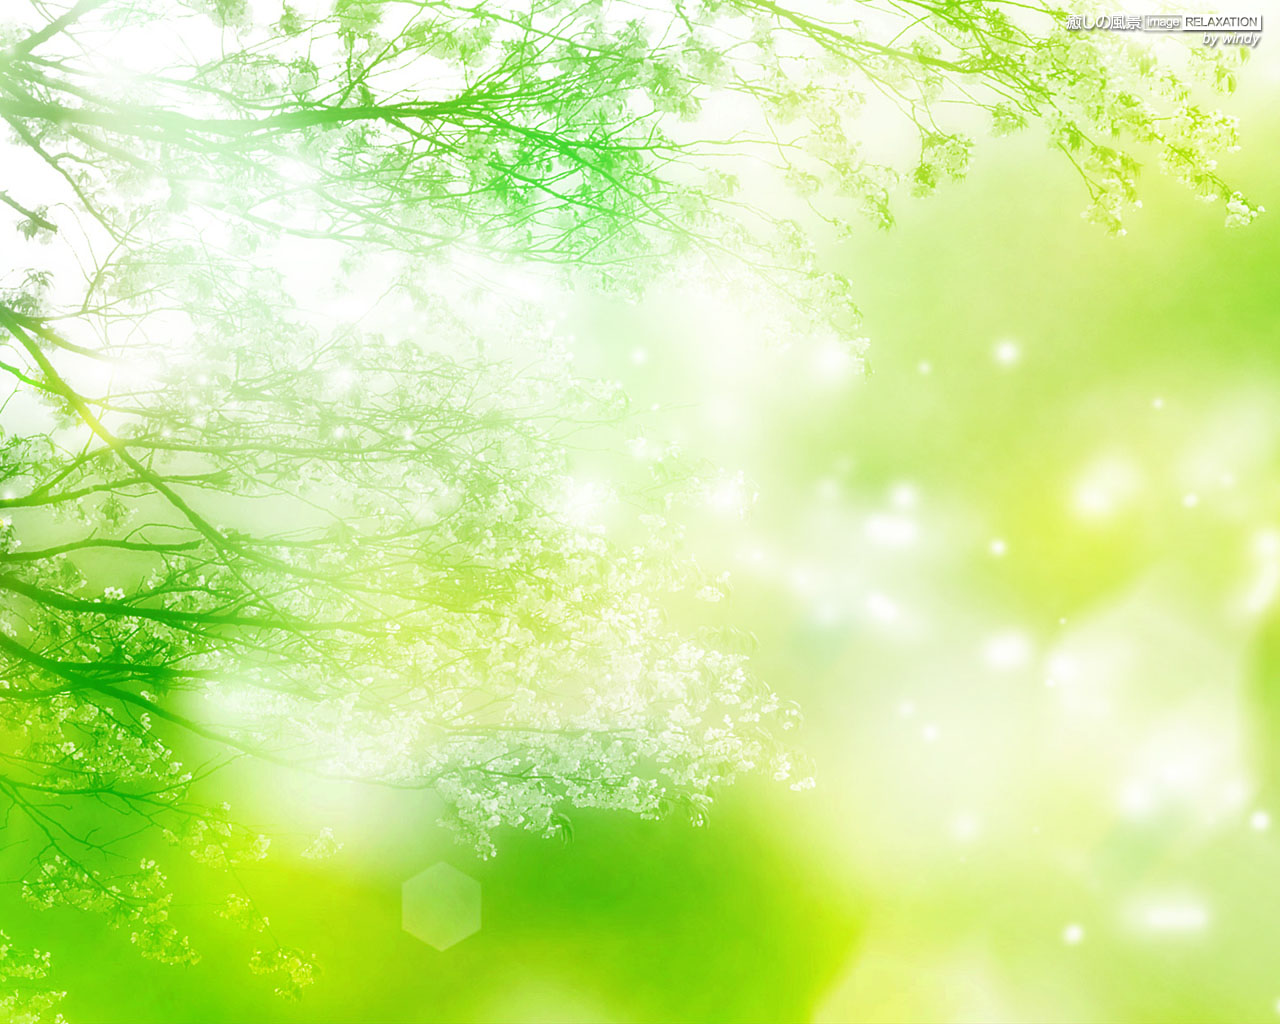 緑の輝き 癒しの風景 Image Relaxation 癒し壁紙